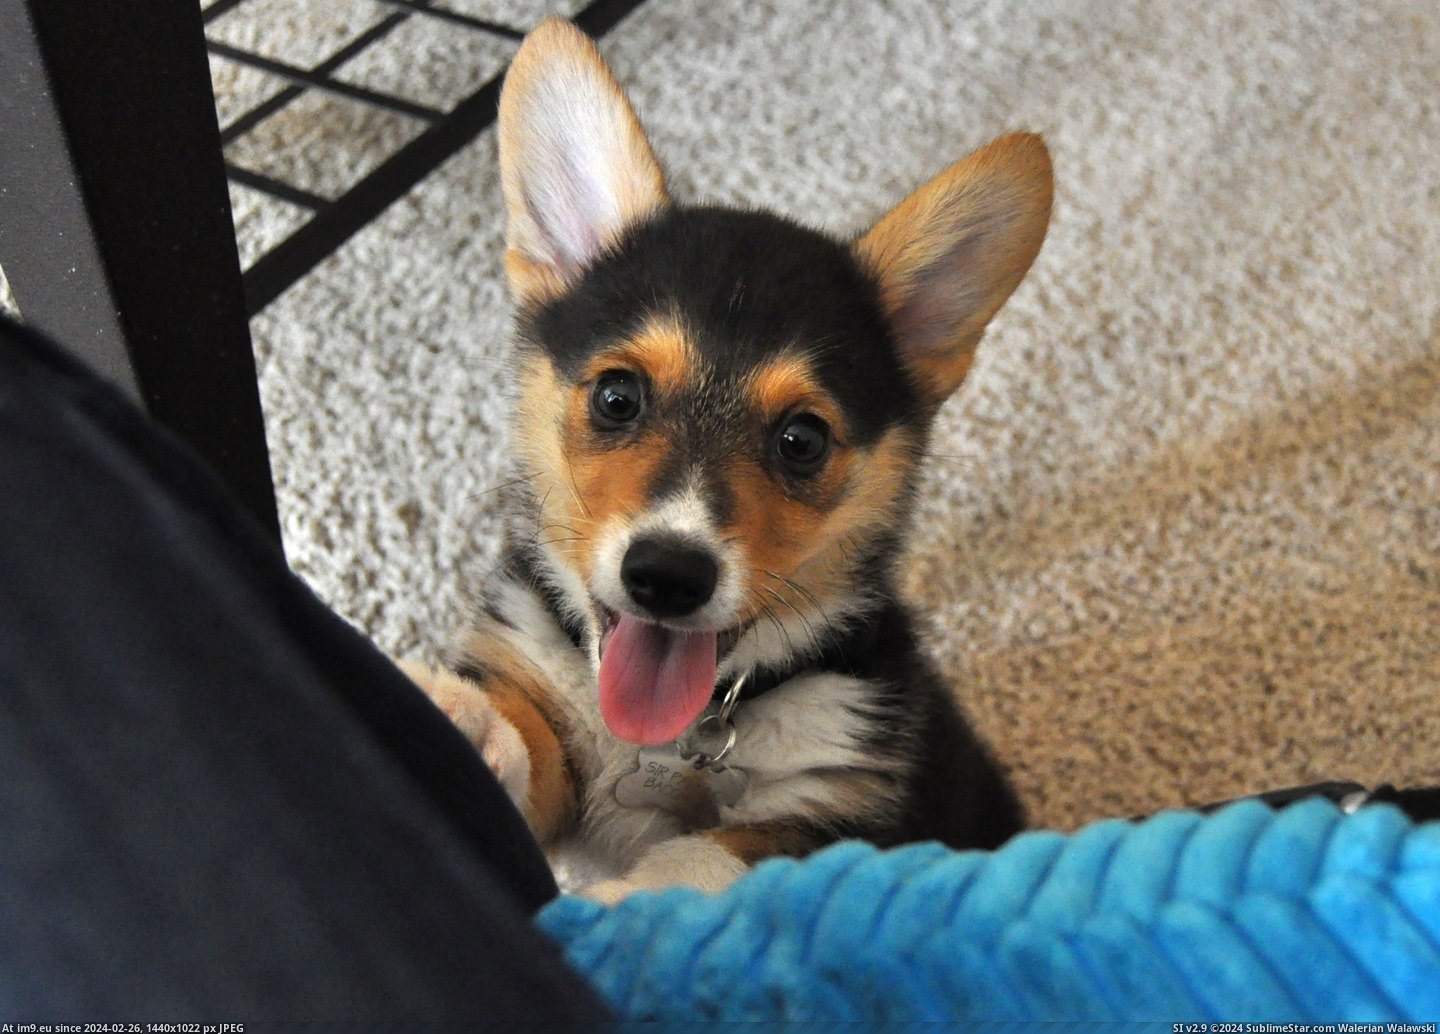 #Puppy #Pancake #Corgi [Aww] This is my corgi puppy, Pancake. 5 Pic. (Obraz z album My r/AWW favs))